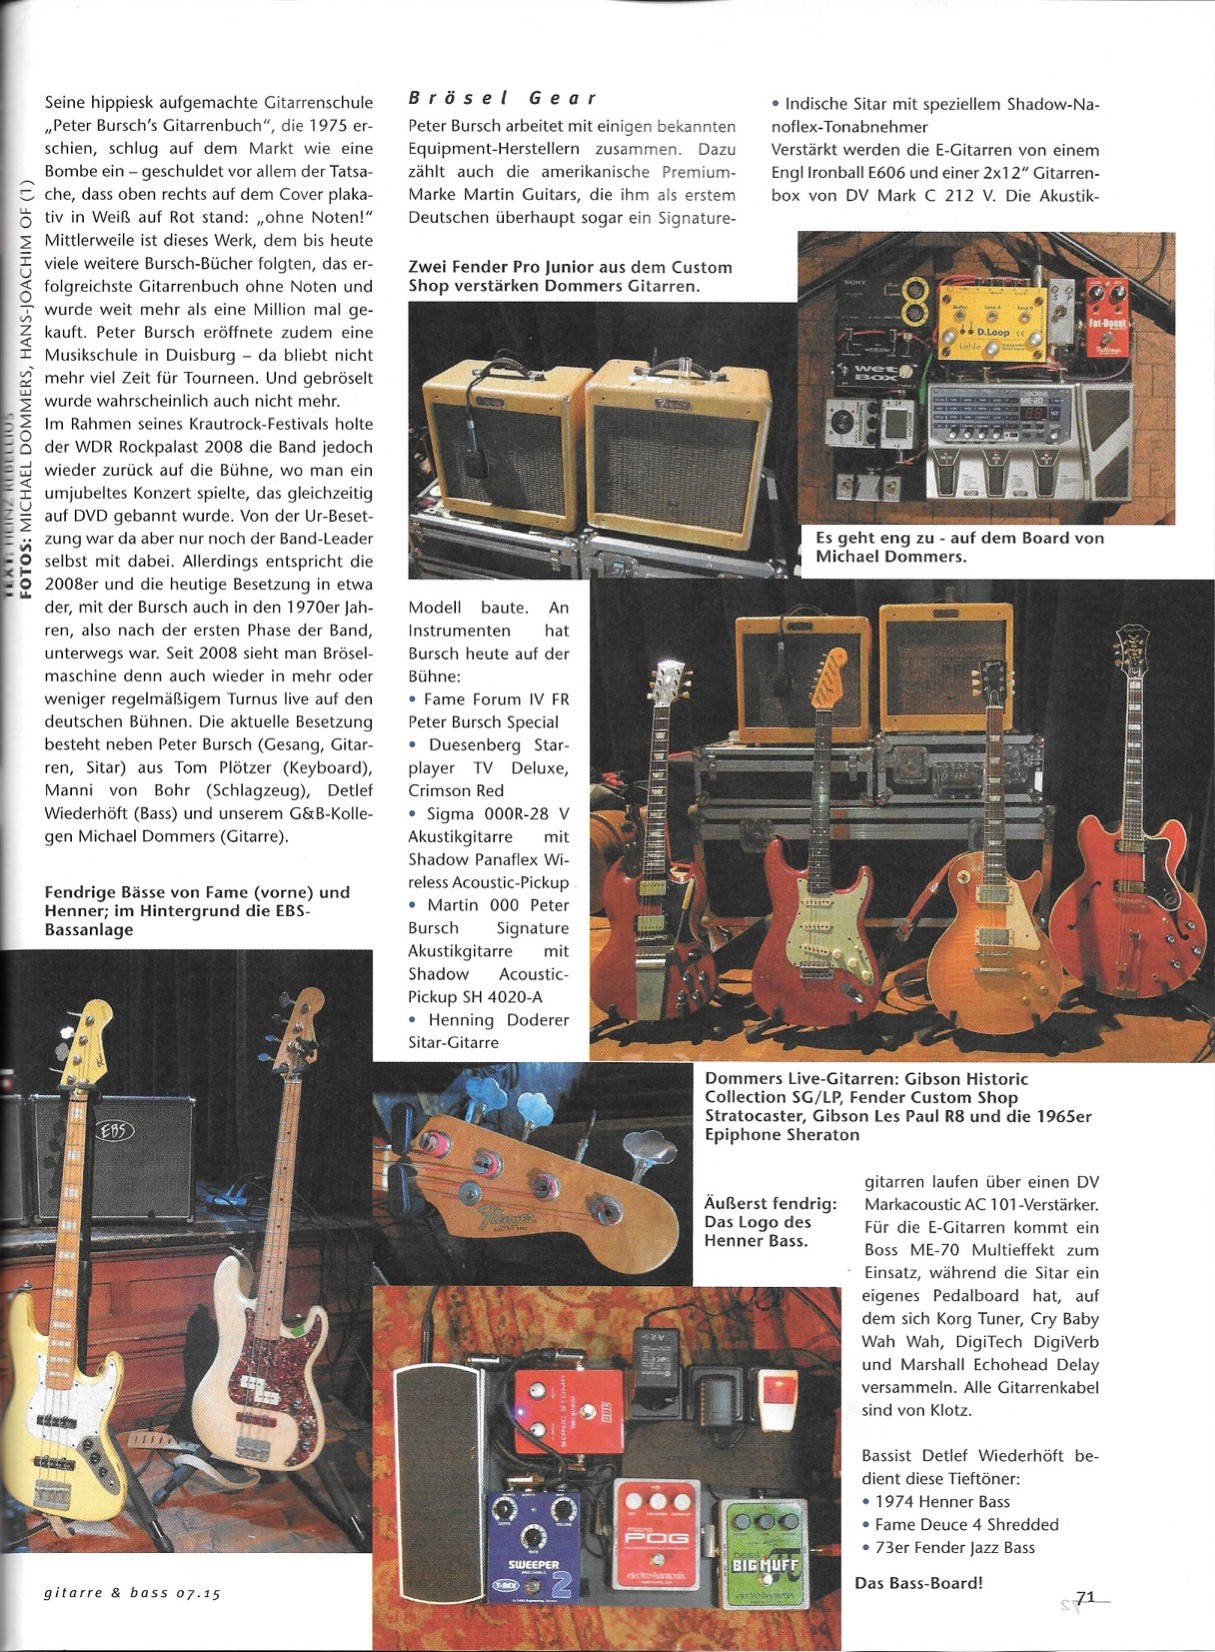 Gitarre & Bass - Bericht über das Equipment der Band II